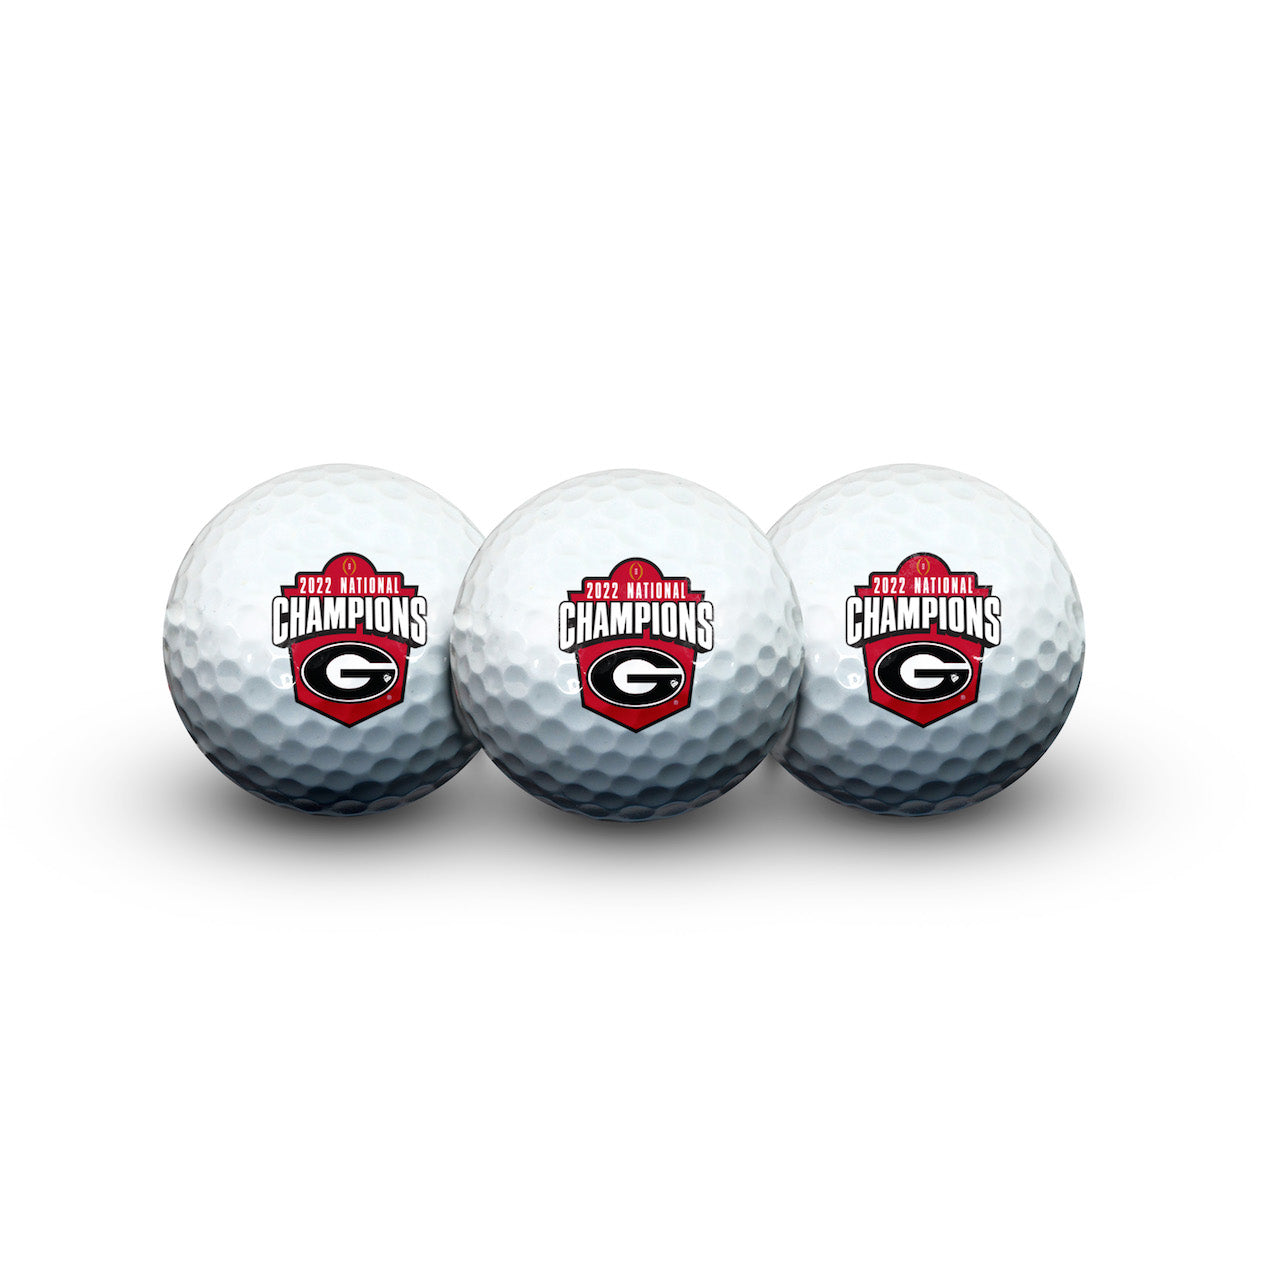 UGA 2022 National Champions 3 Golf Ball Set